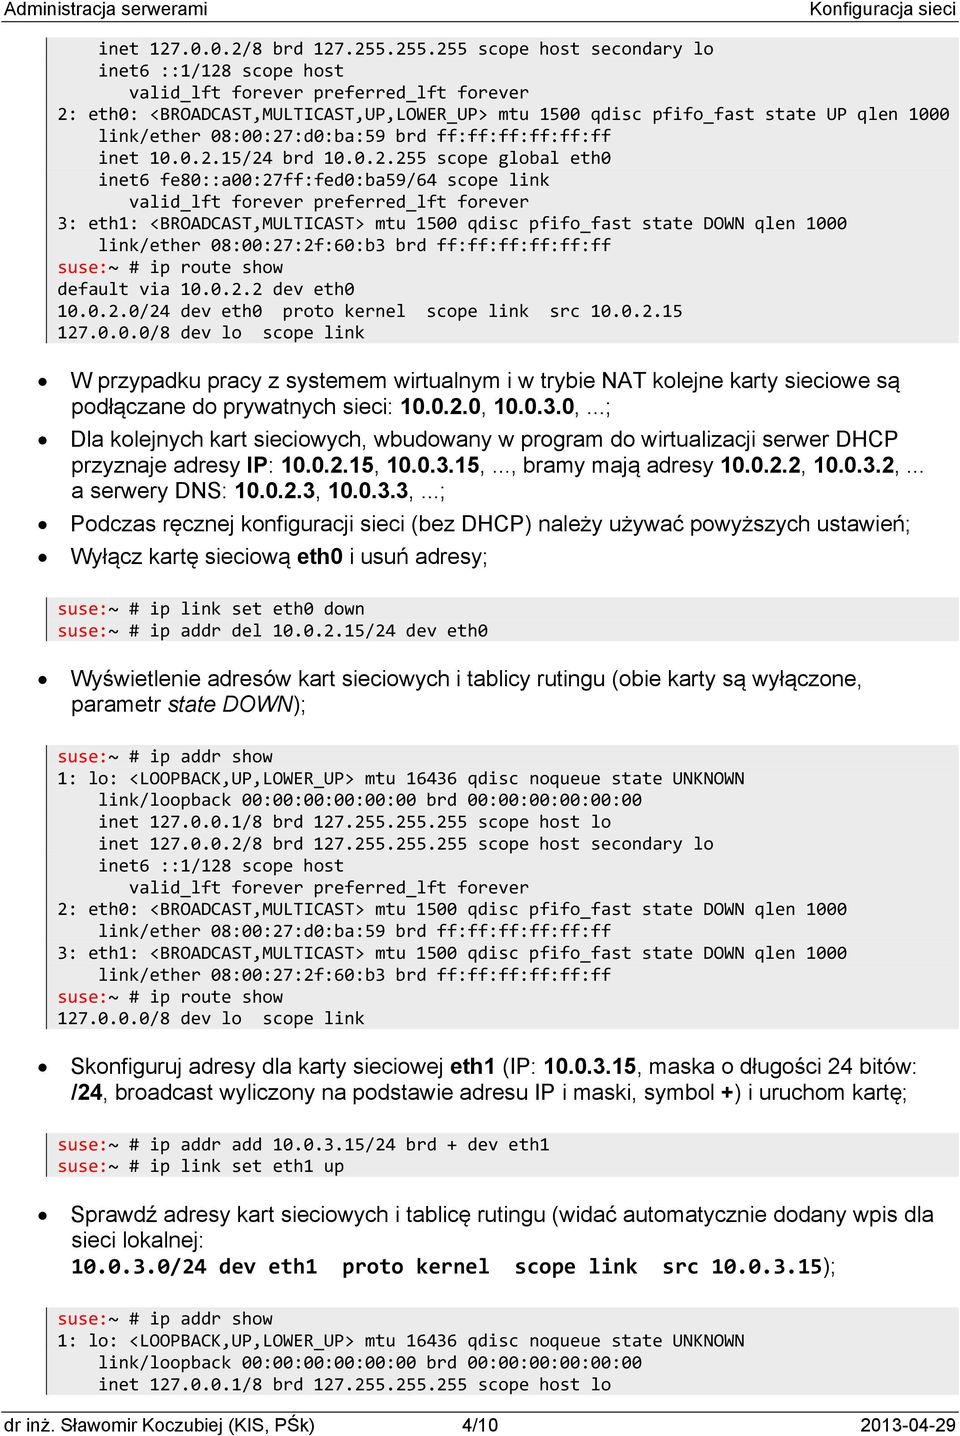 0.2.0/24 dev eth0 proto kernel scope link src 10.0.2.15 127.0.0.0/8 dev lo scope link W przypadku pracy z systemem wirtualnym i w trybie NAT kolejne karty sieciowe są podłączane do prywatnych sieci: 10.